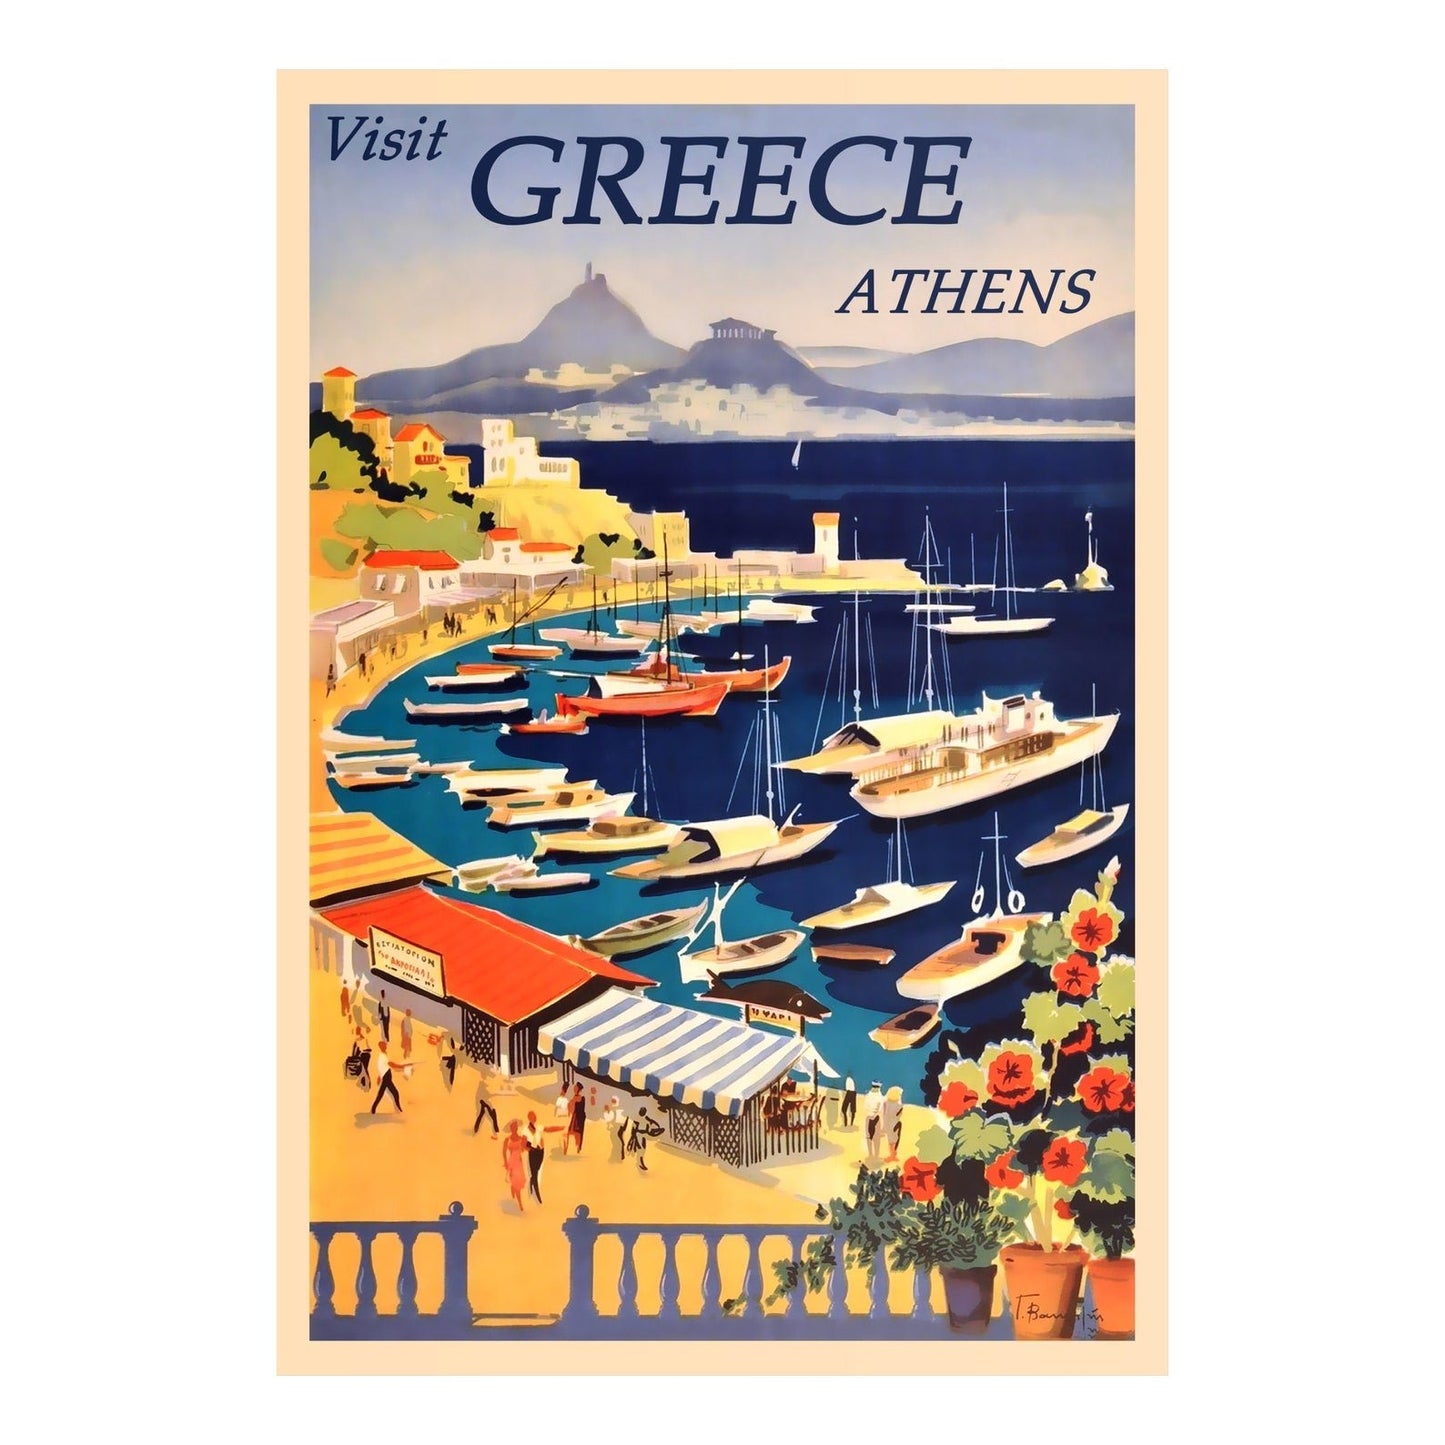 Visit Athens - Vintage Greece Travel Poster